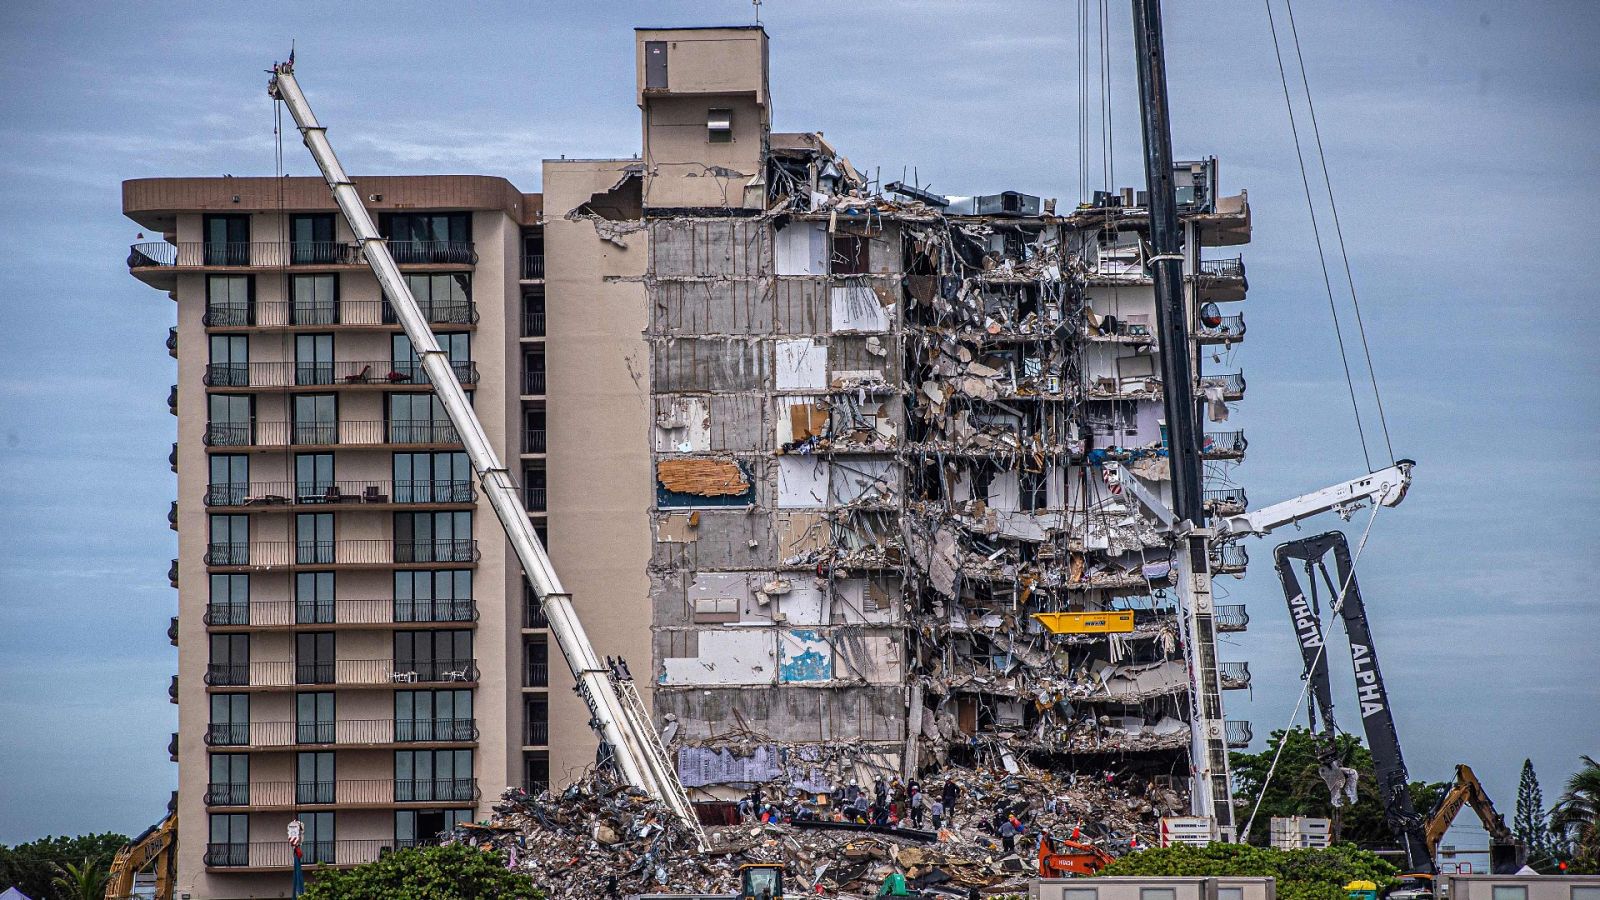 Estado del edificio derrumbado en Miami antes de que fuese demolido de manera controlada